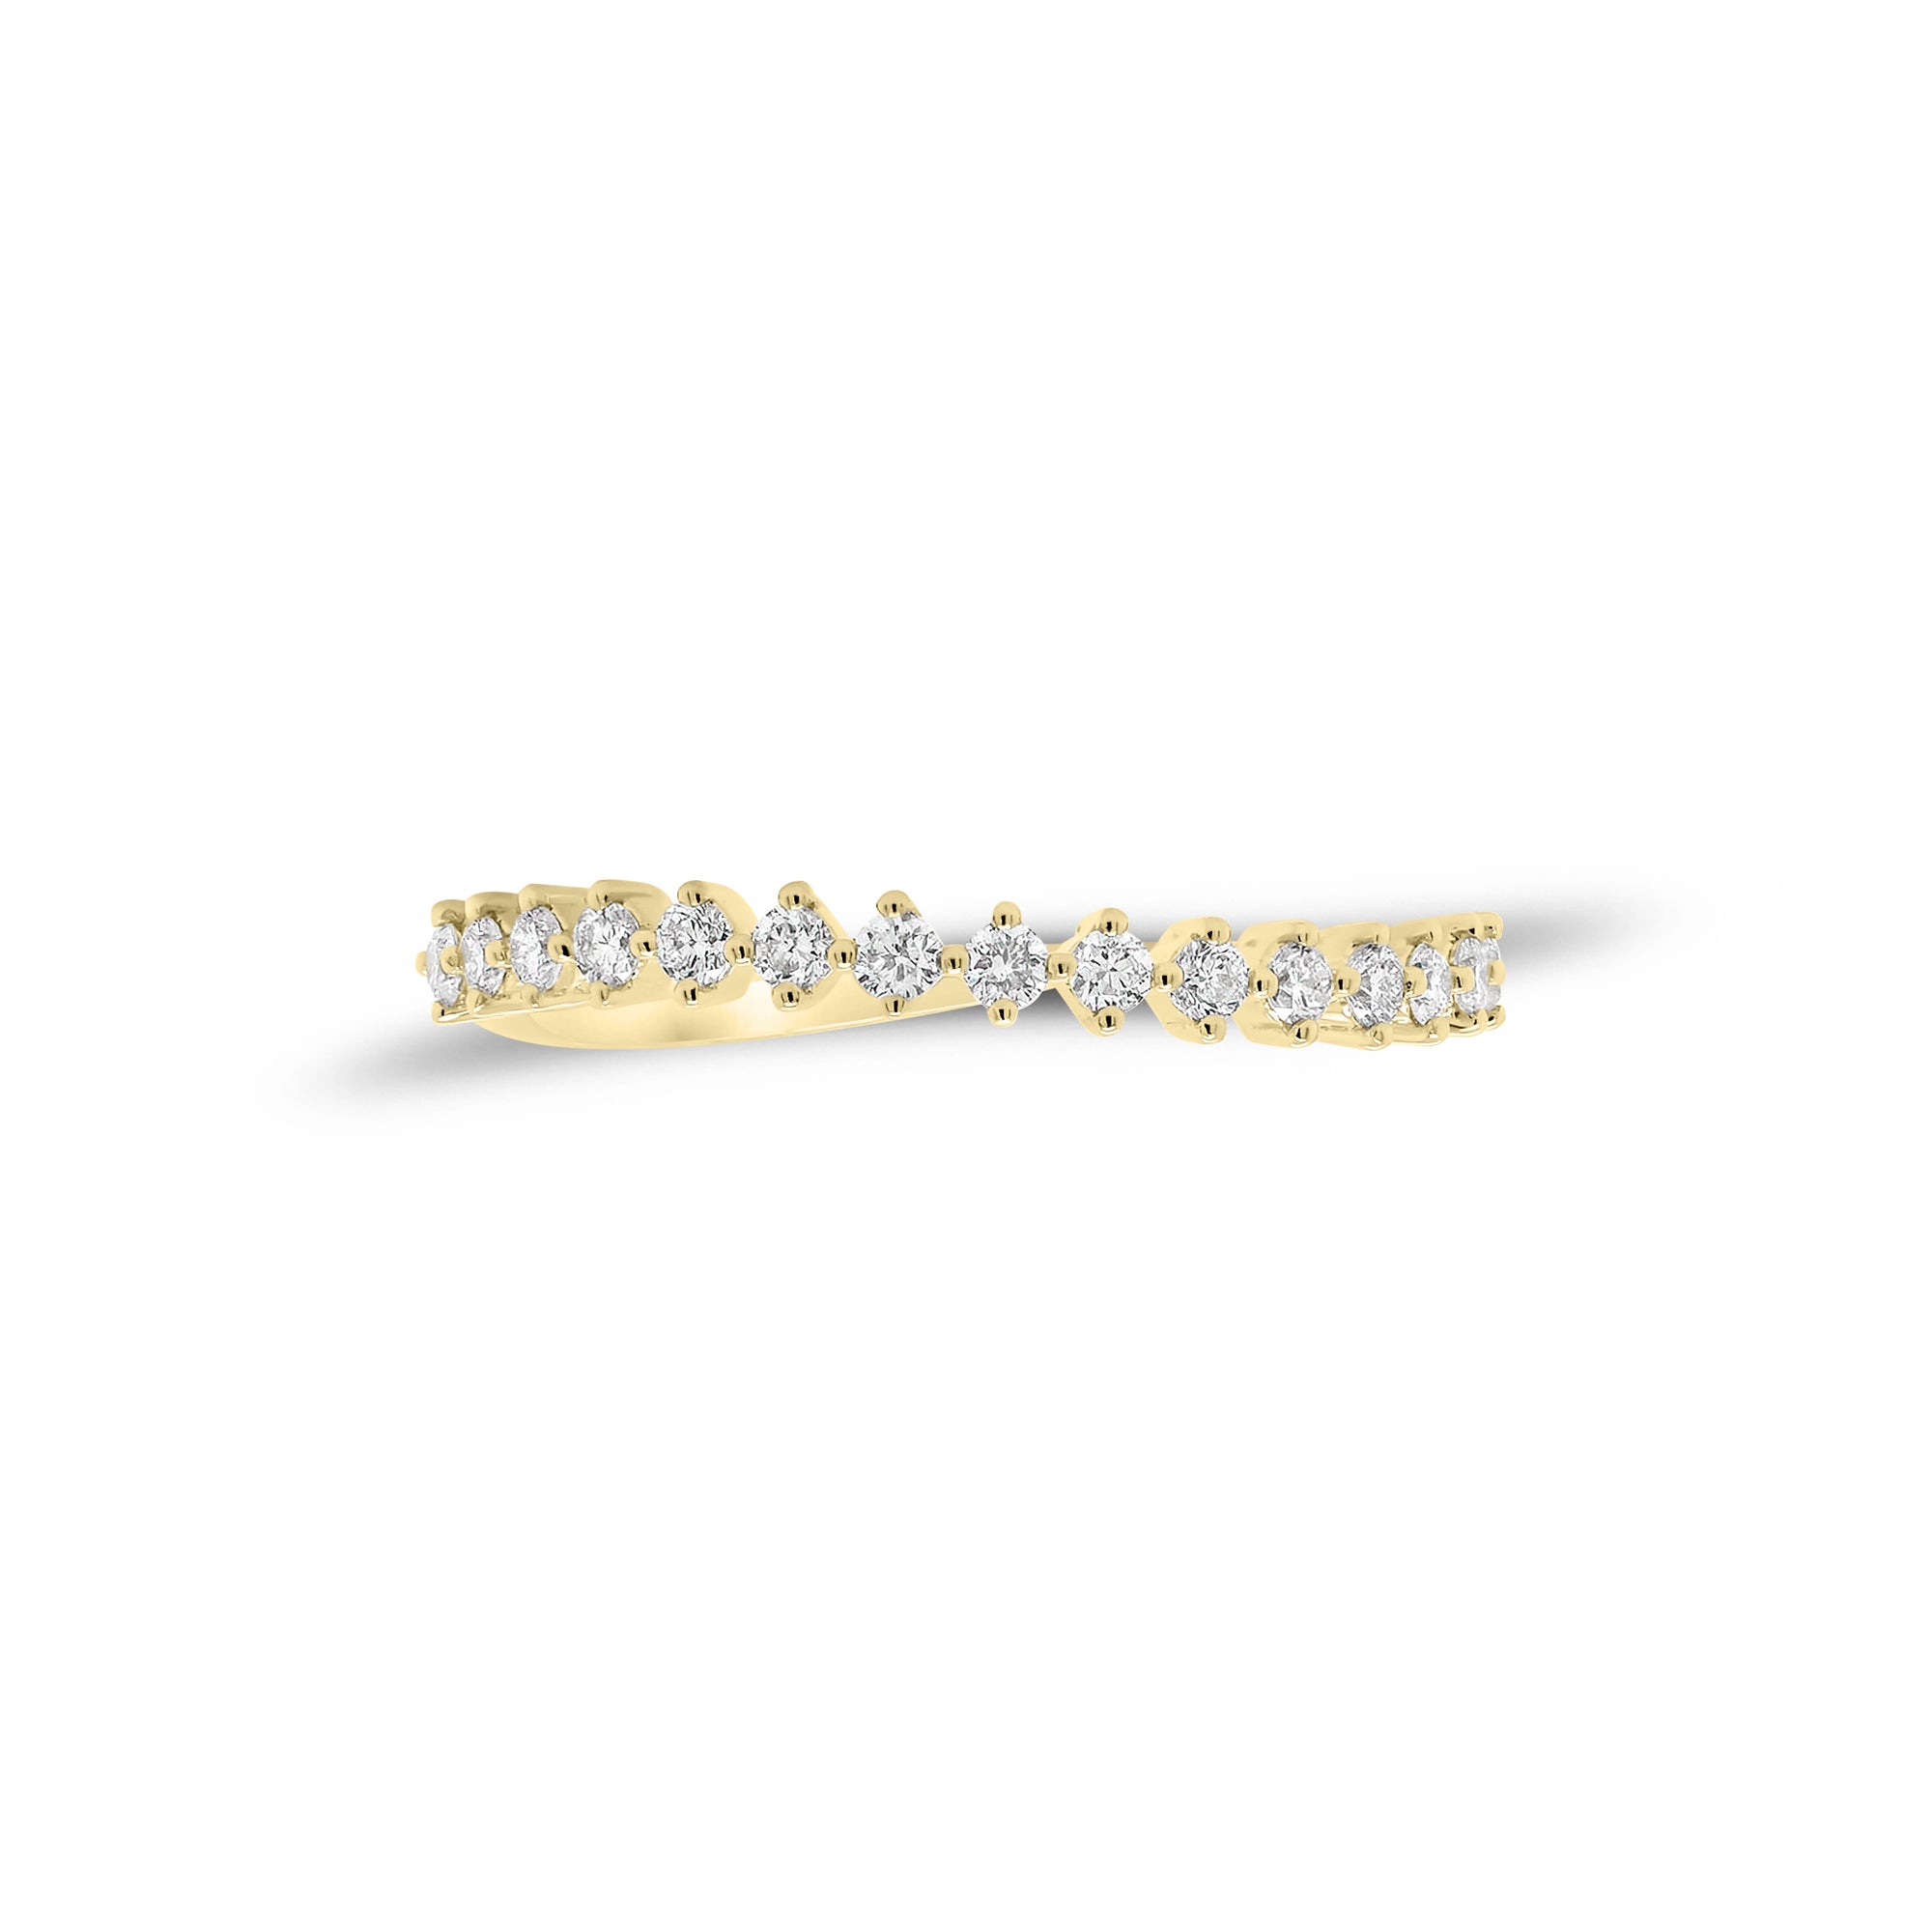 Prong-Set Diamond Wave Ring - 14K gold weighing 0.98 grams - 15 round diamonds weighing 0.24 carats